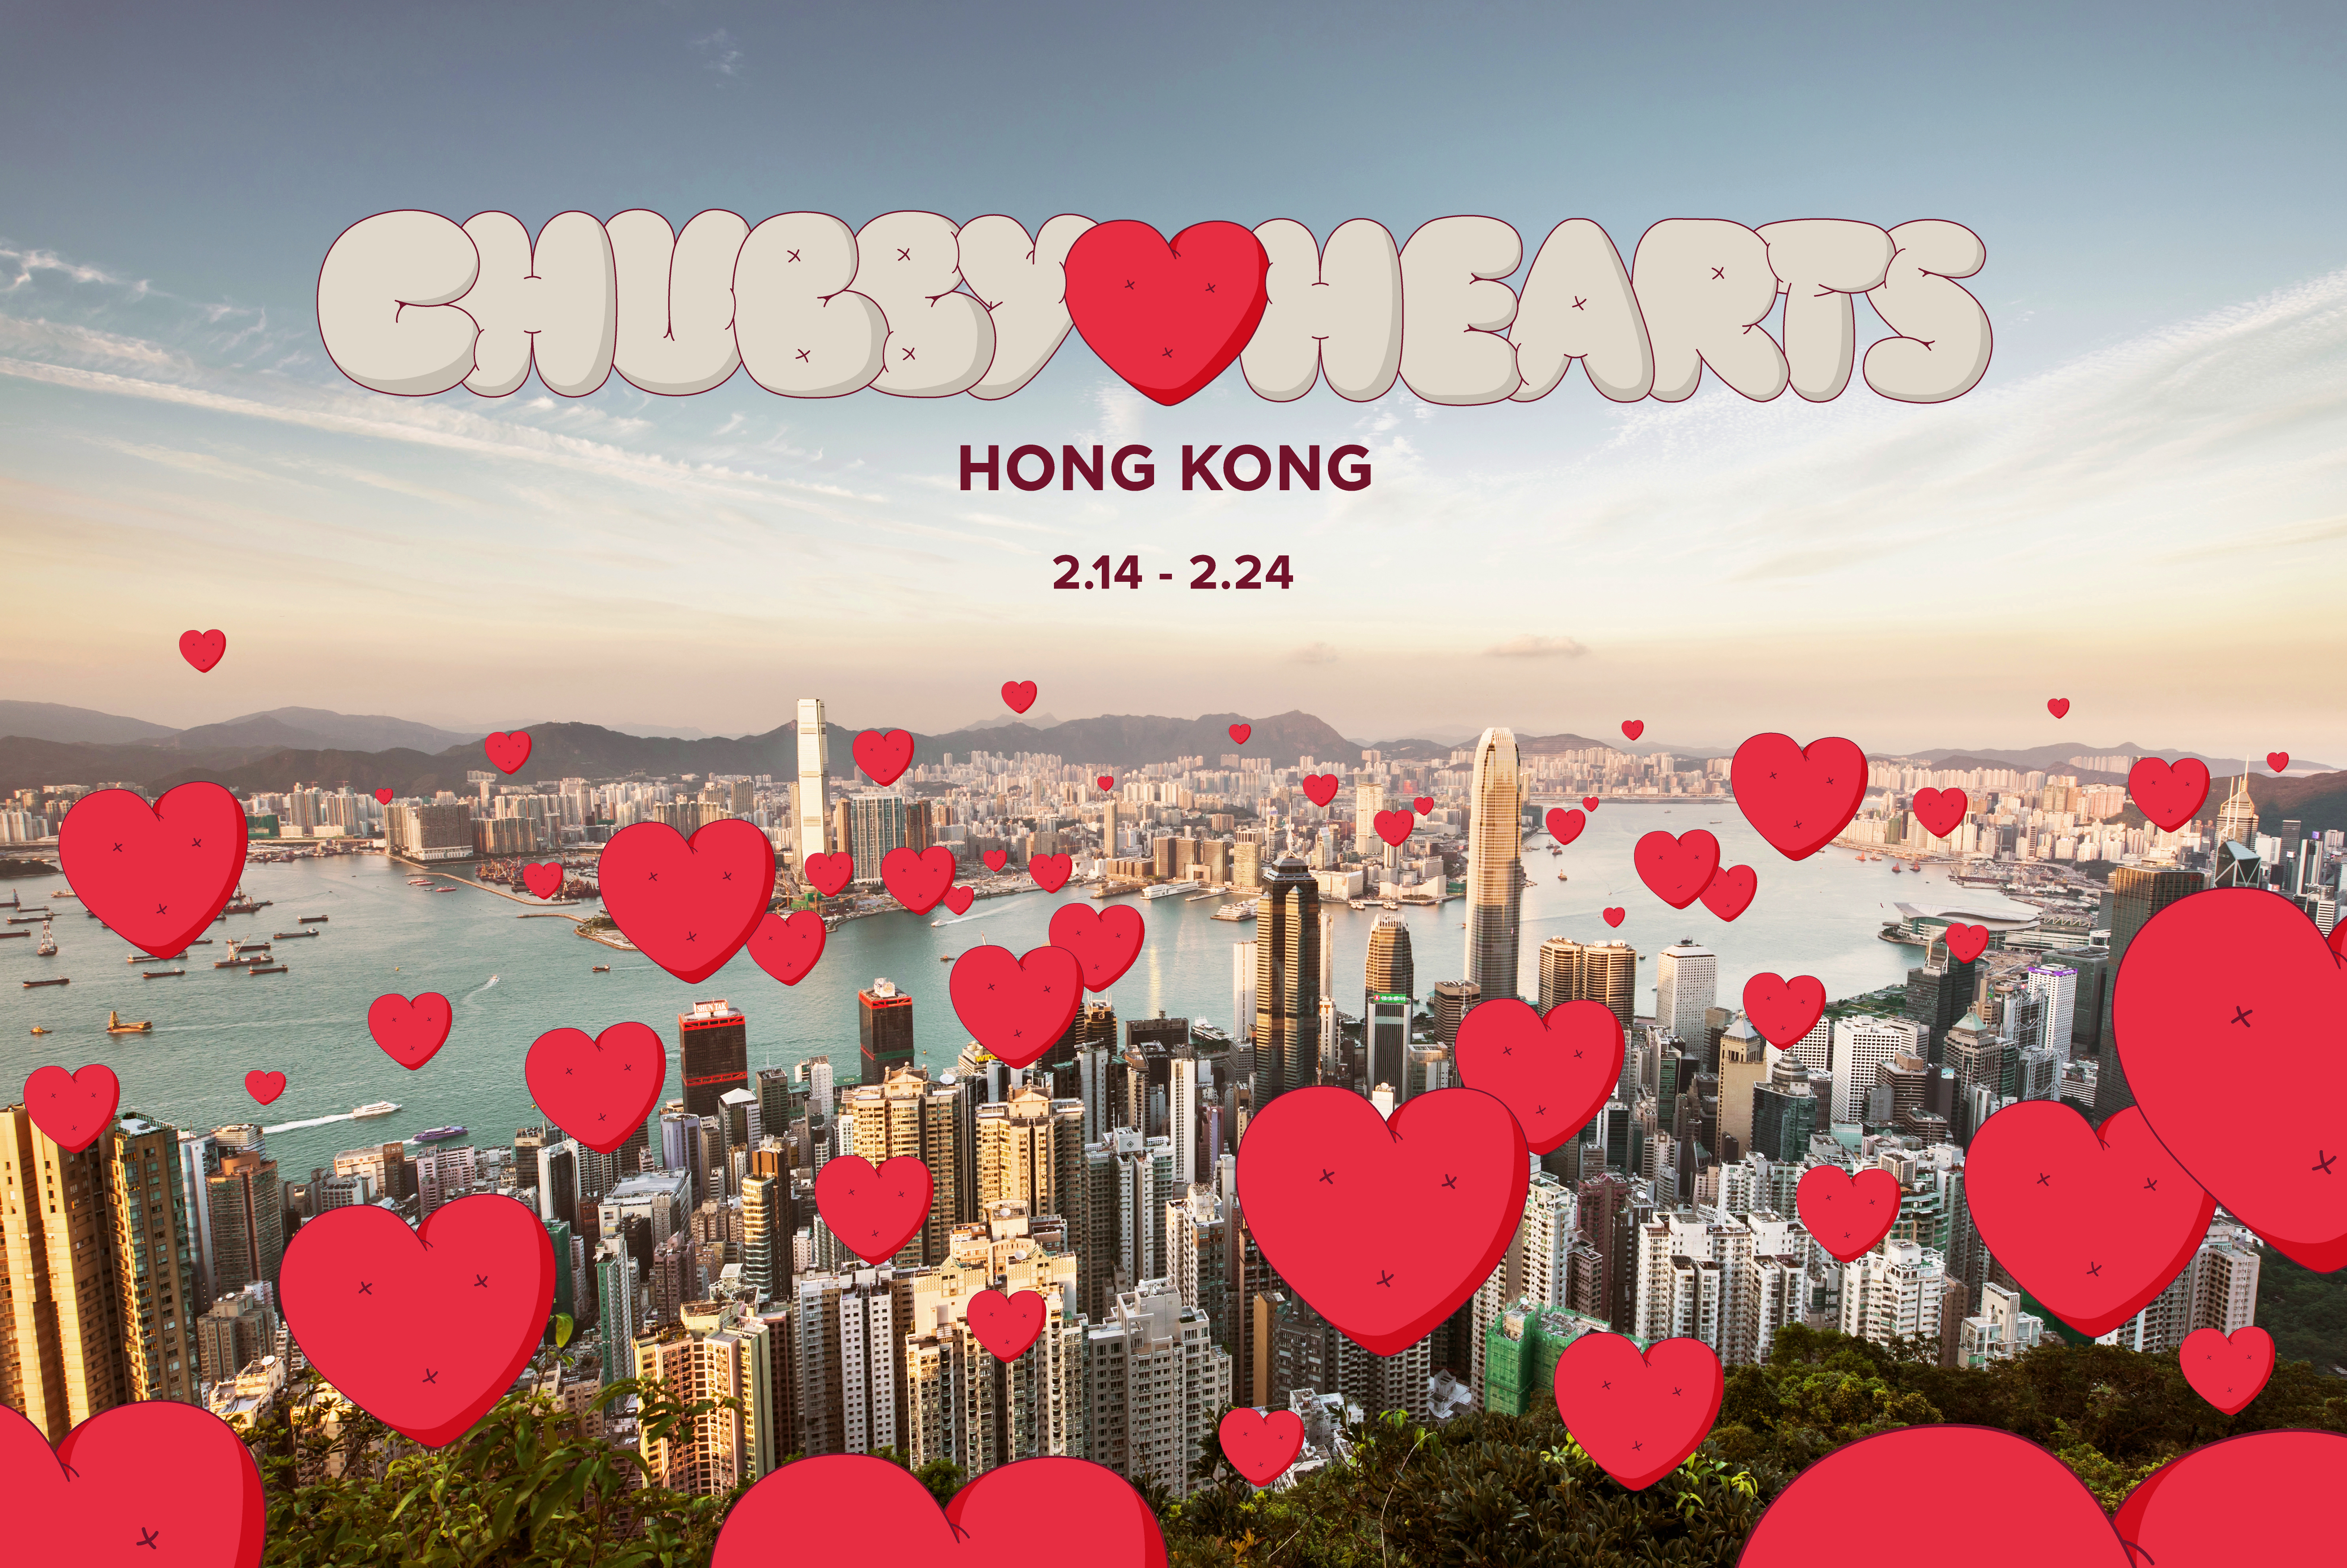 香港设计中心呈献「Chubby Hearts Hong Kong」  巨型红心飘浮香港天际   传递爱的讯息